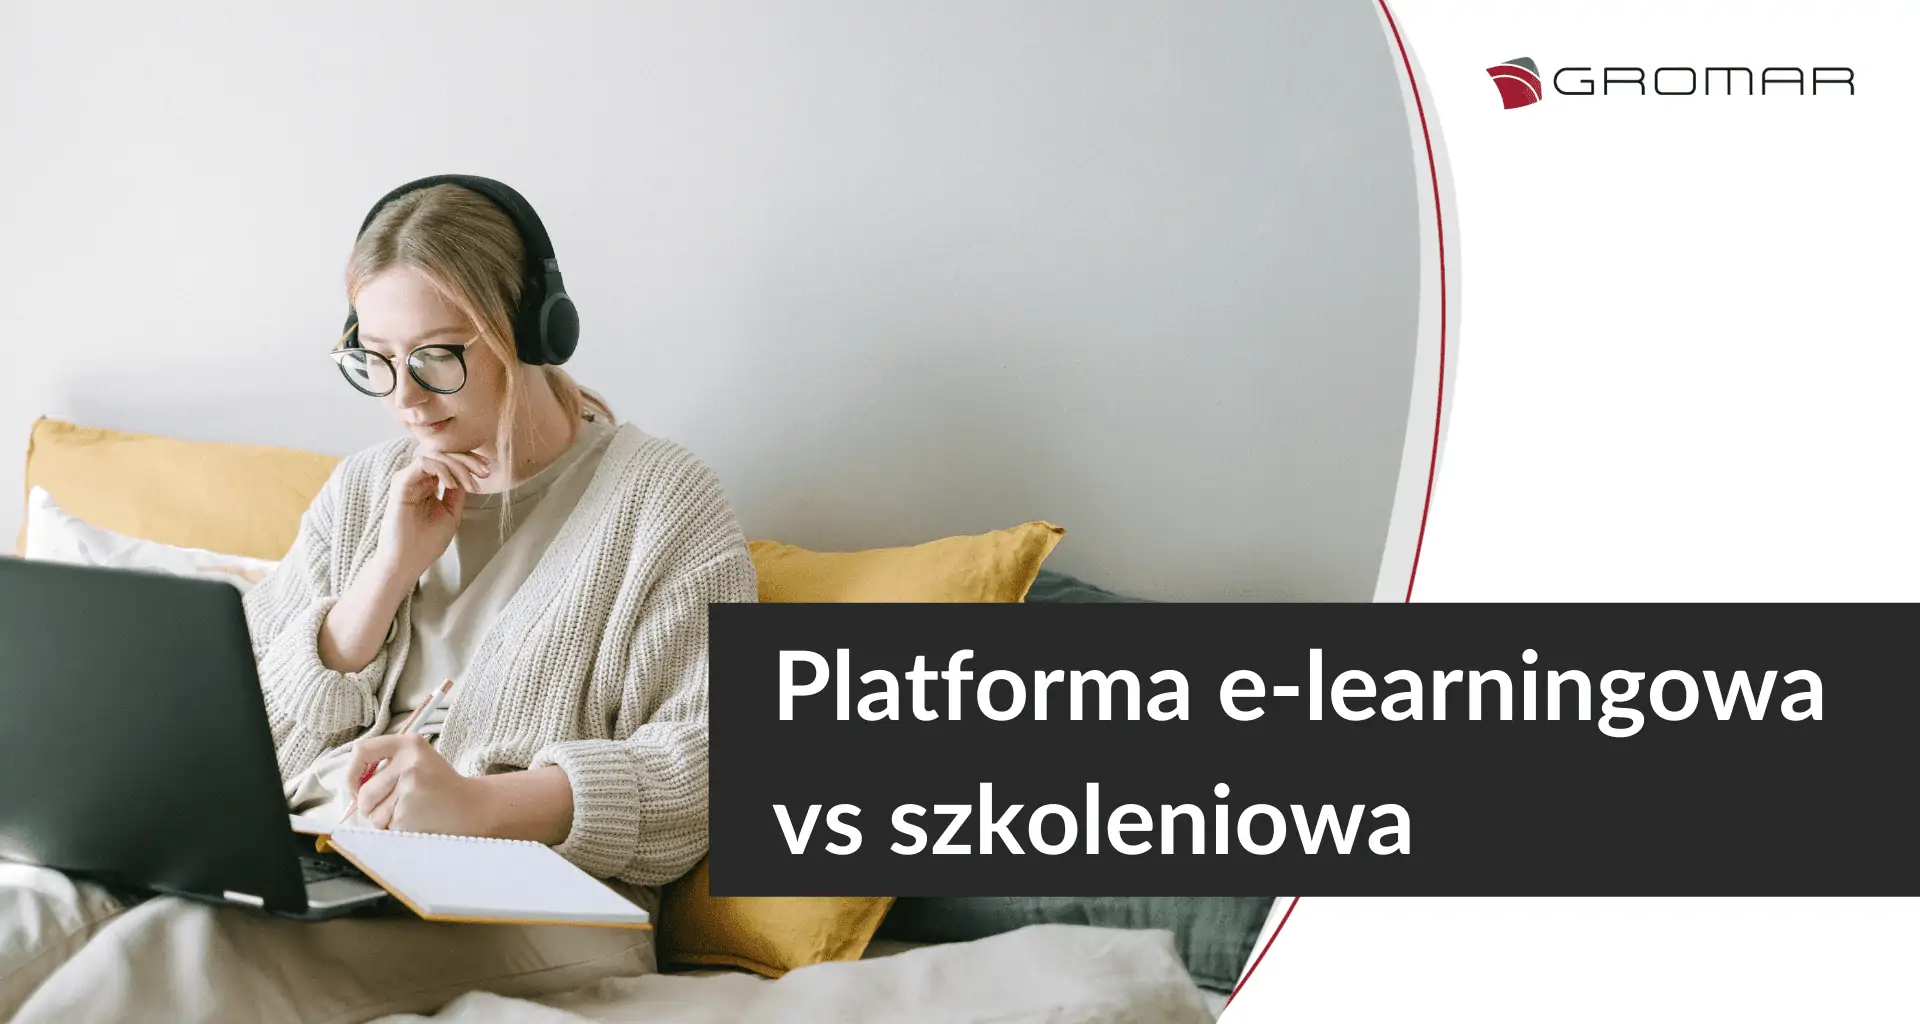 Platforma e-learningowa a szkoleniowa – czy różnią się od siebie?